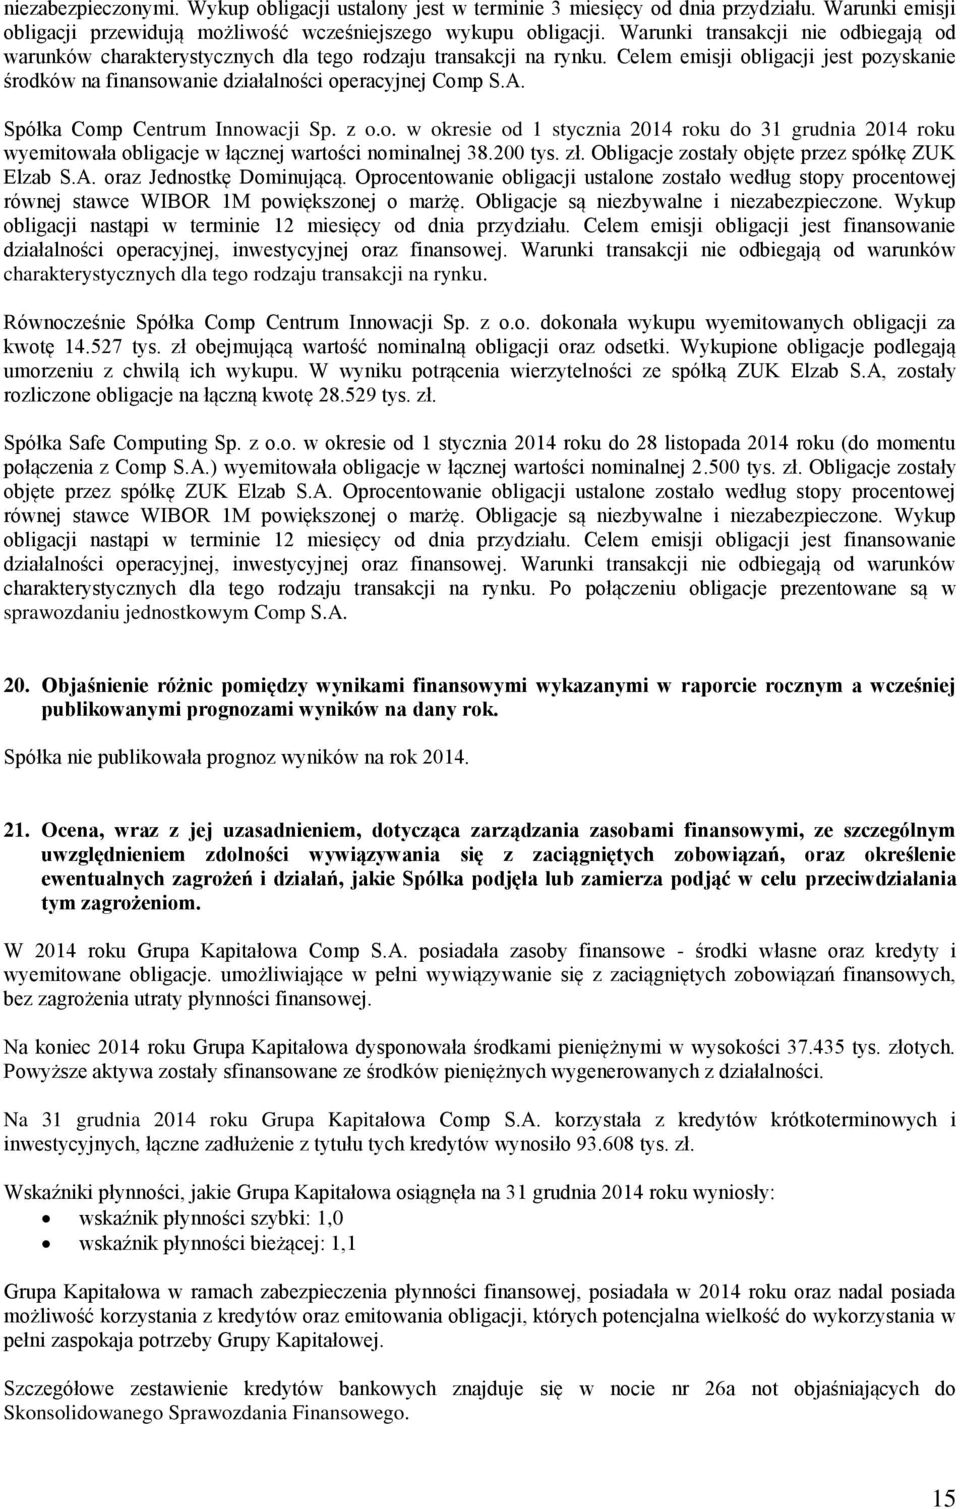 Spółka Comp Centrum Innowacji Sp. z o.o. w okresie od 1 stycznia 2014 roku 31 grudnia 2014 roku wyemitowała obligacje w łącznej wartości nominalnej 38.200 tys. zł.